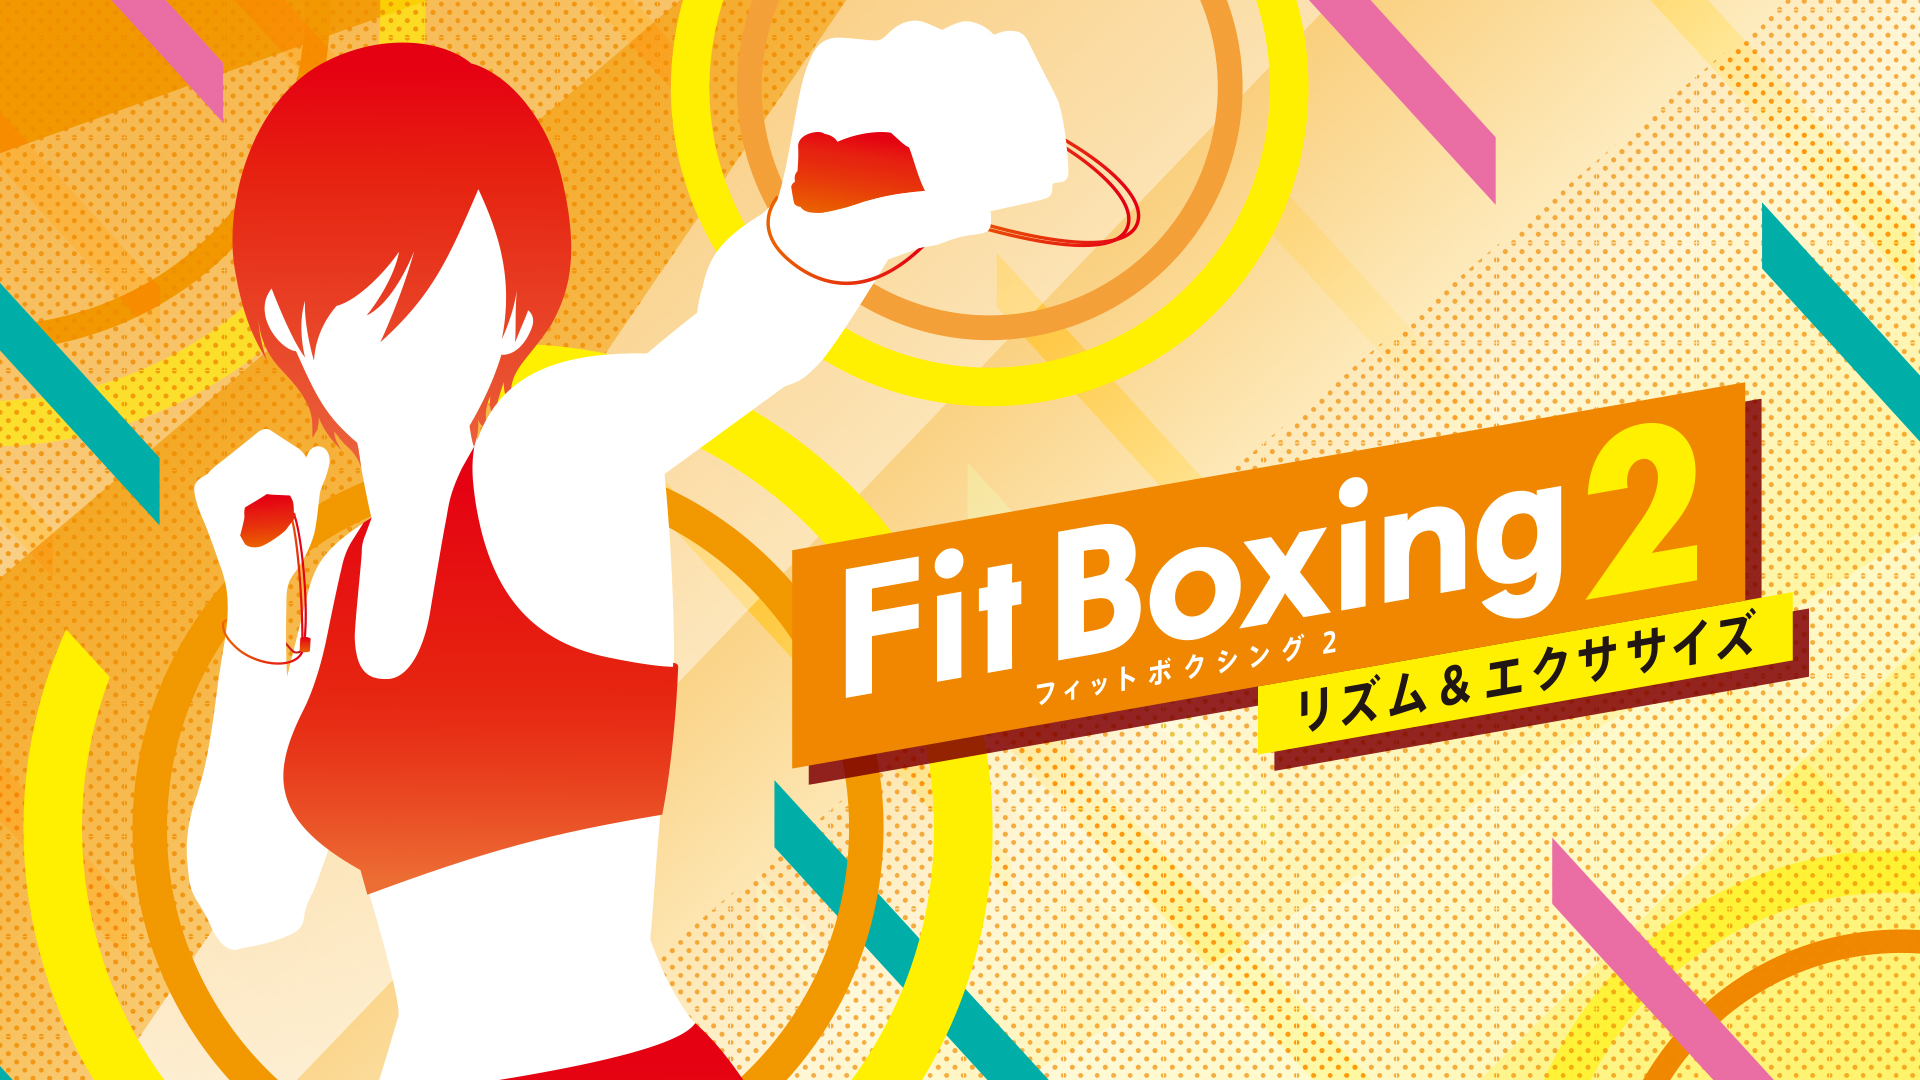 会員数480万人超 食事管理アプリ あすけん ユーザーがコロナ禍平均2 6kg減した 宅トレ ゲーム最新版 Fit Boxing2 と連携 株式会社askenのプレスリリース